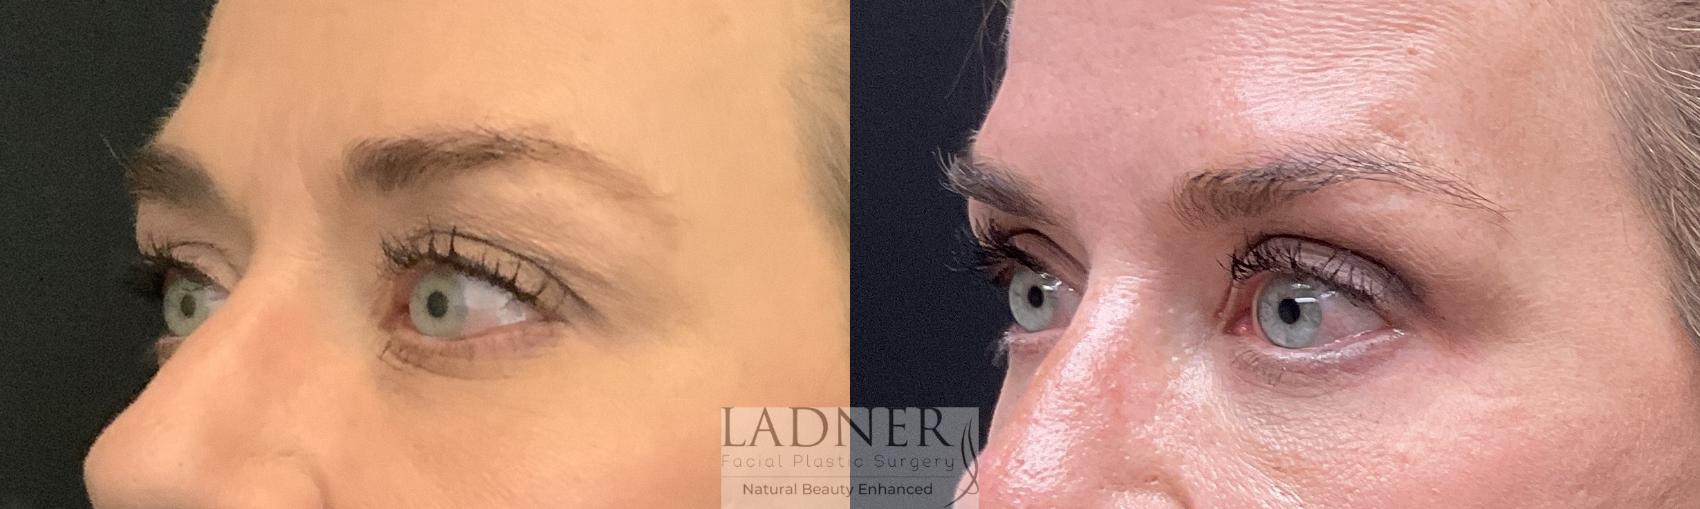 Eyelid Surgery (blepharoplasty) Case 196 Before & After Left Oblique | Denver, CO | Ladner Facial Plastic Surgery